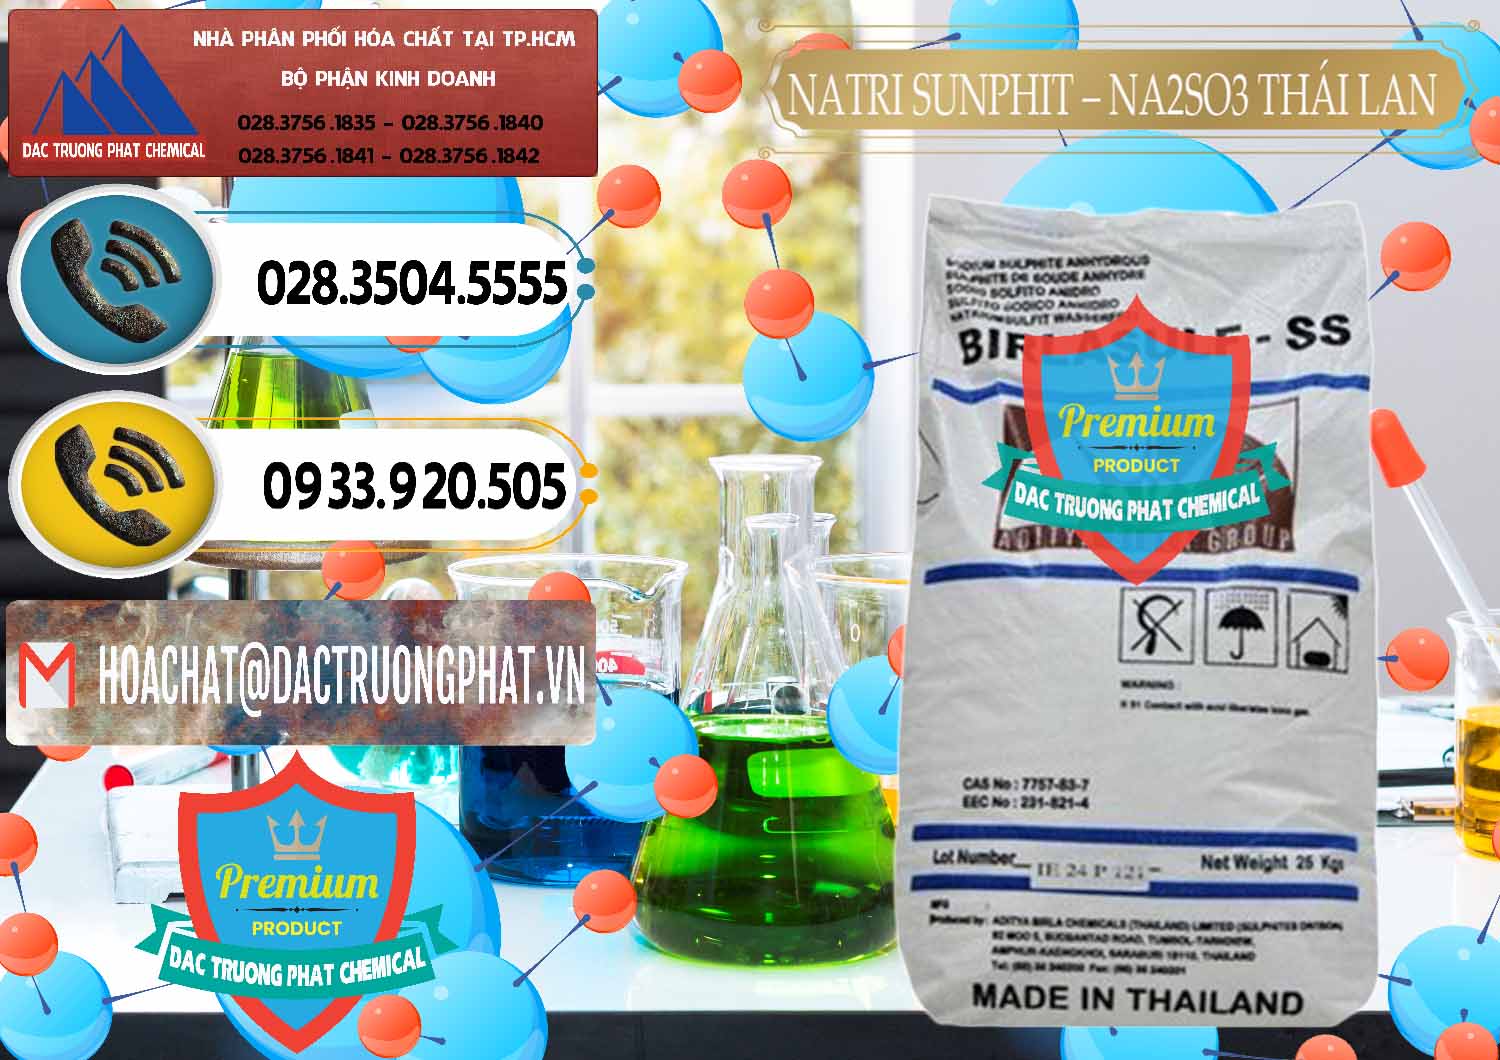 Công ty chuyên bán & cung cấp Natri Sunphit - NA2SO3 Thái Lan - 0105 - Công ty chuyên phân phối _ bán hóa chất tại TP.HCM - hoachatdetnhuom.vn